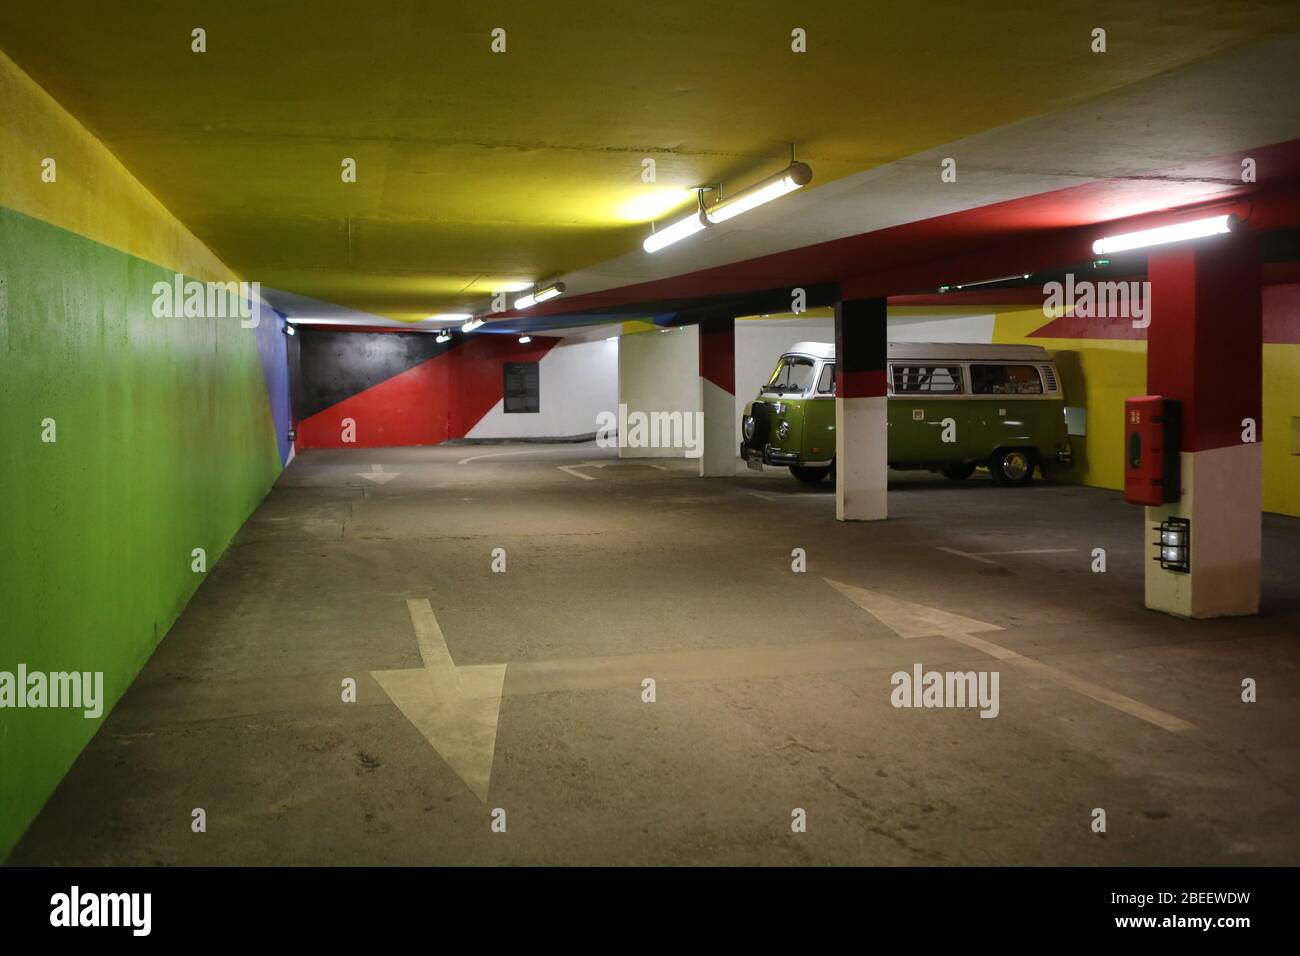 Flèches directionnelles sur le sol. Parking souterrain gratuit. 2KM3. Saint-Gervais-les-Bains. Haute-Savoie. France. Stock Photo